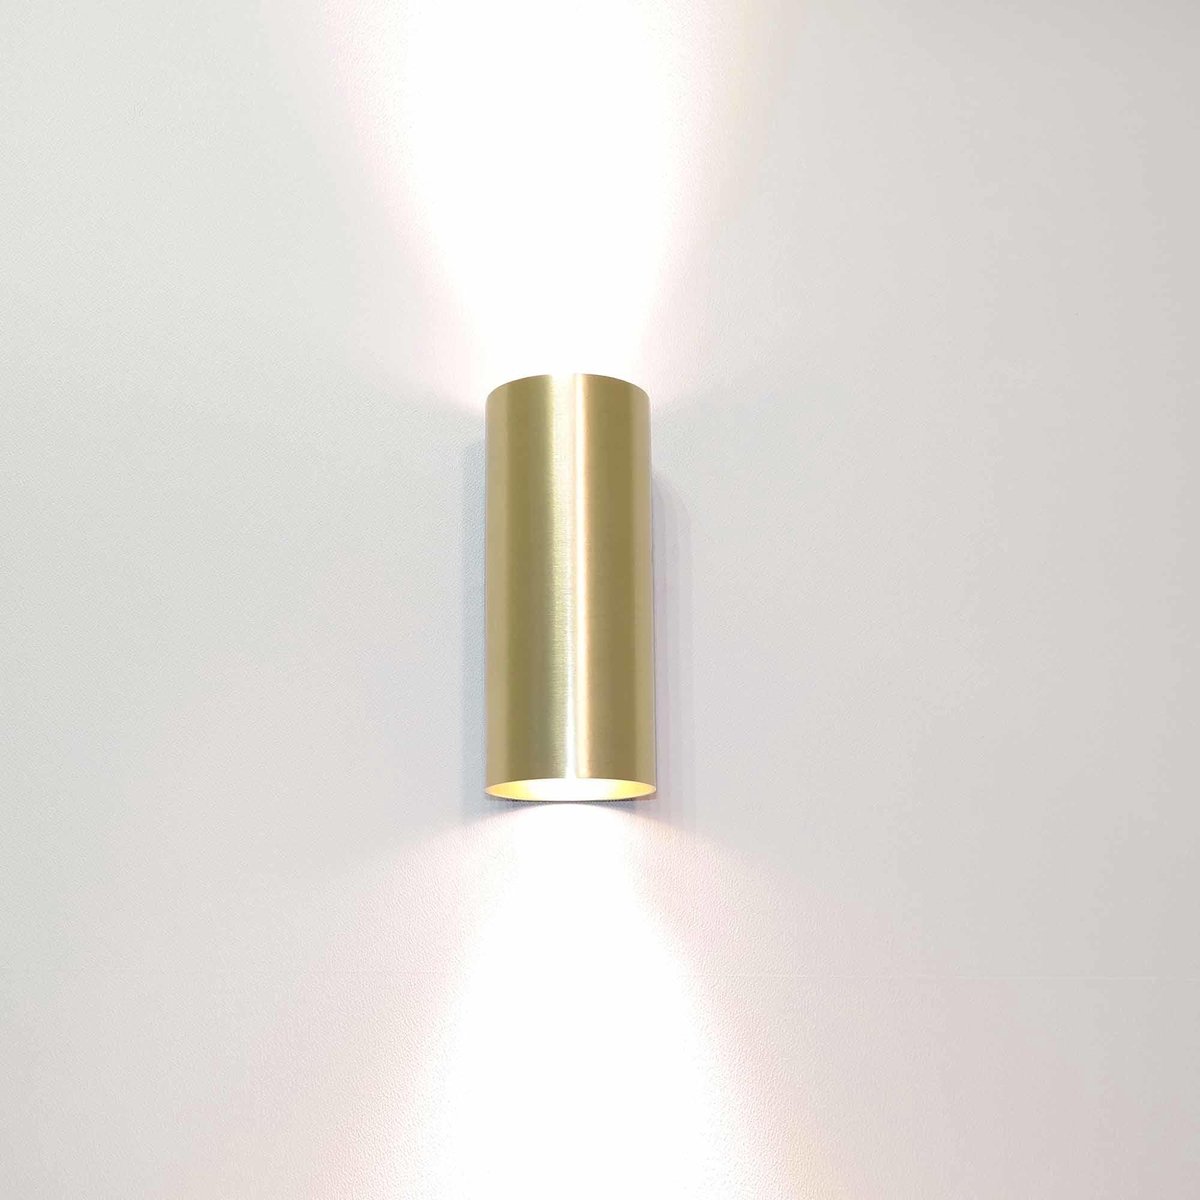 Artdelight - Wandlamp Roulo 2 lichts H 15,4 Ø 6,5 cm mat goud